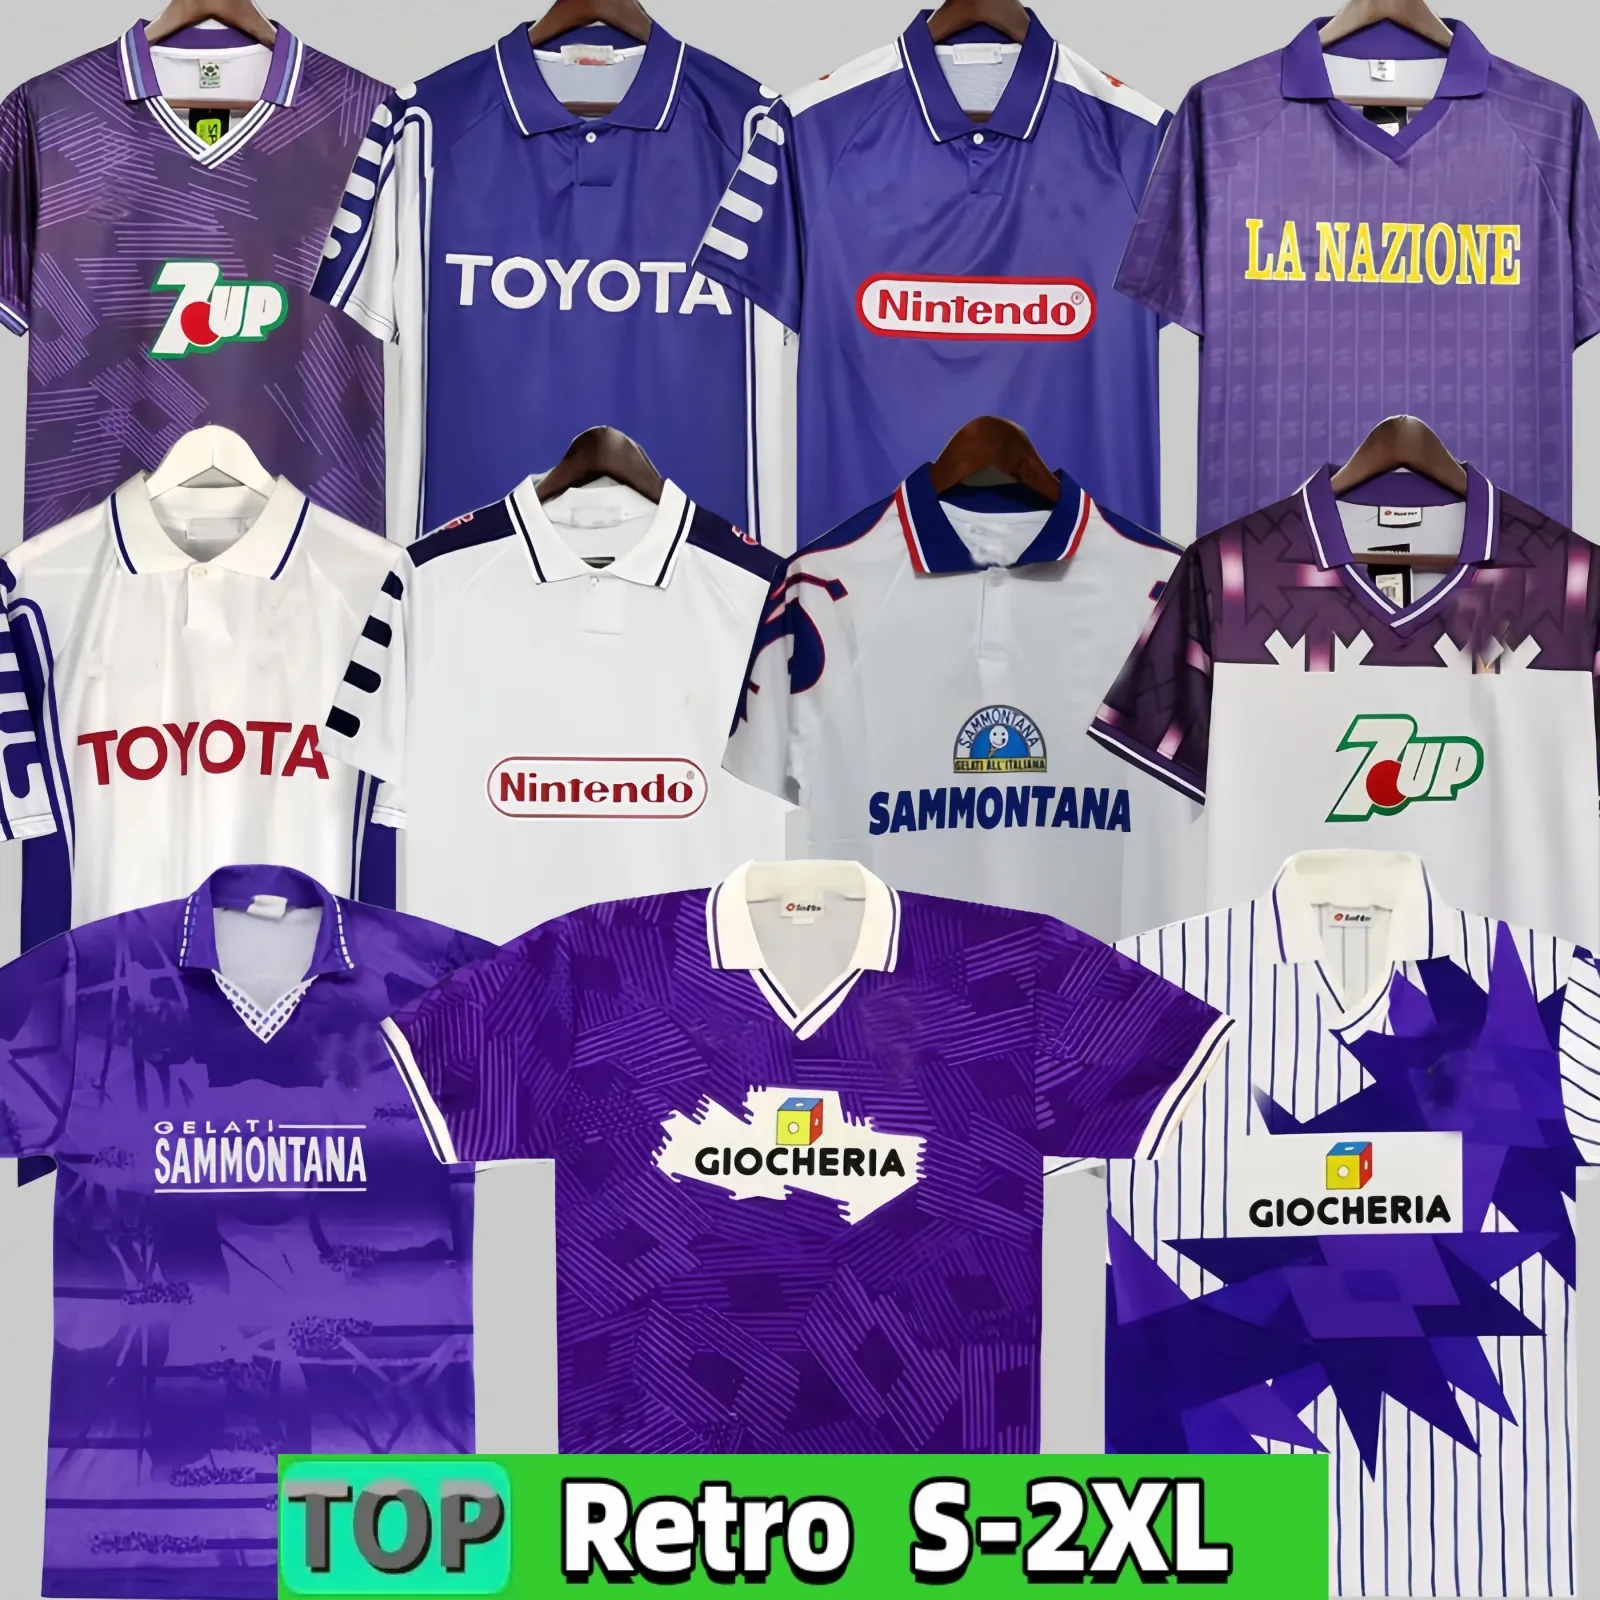 1995 1996 Maillots de football classiques rétro de la Fiorentina Sweat-shirt 1989 90 91 92 93 97 98 99 BATISTUTA R.BAGGIO DUNGA Maillot de football rétro de la Fiorentina chandal futbol